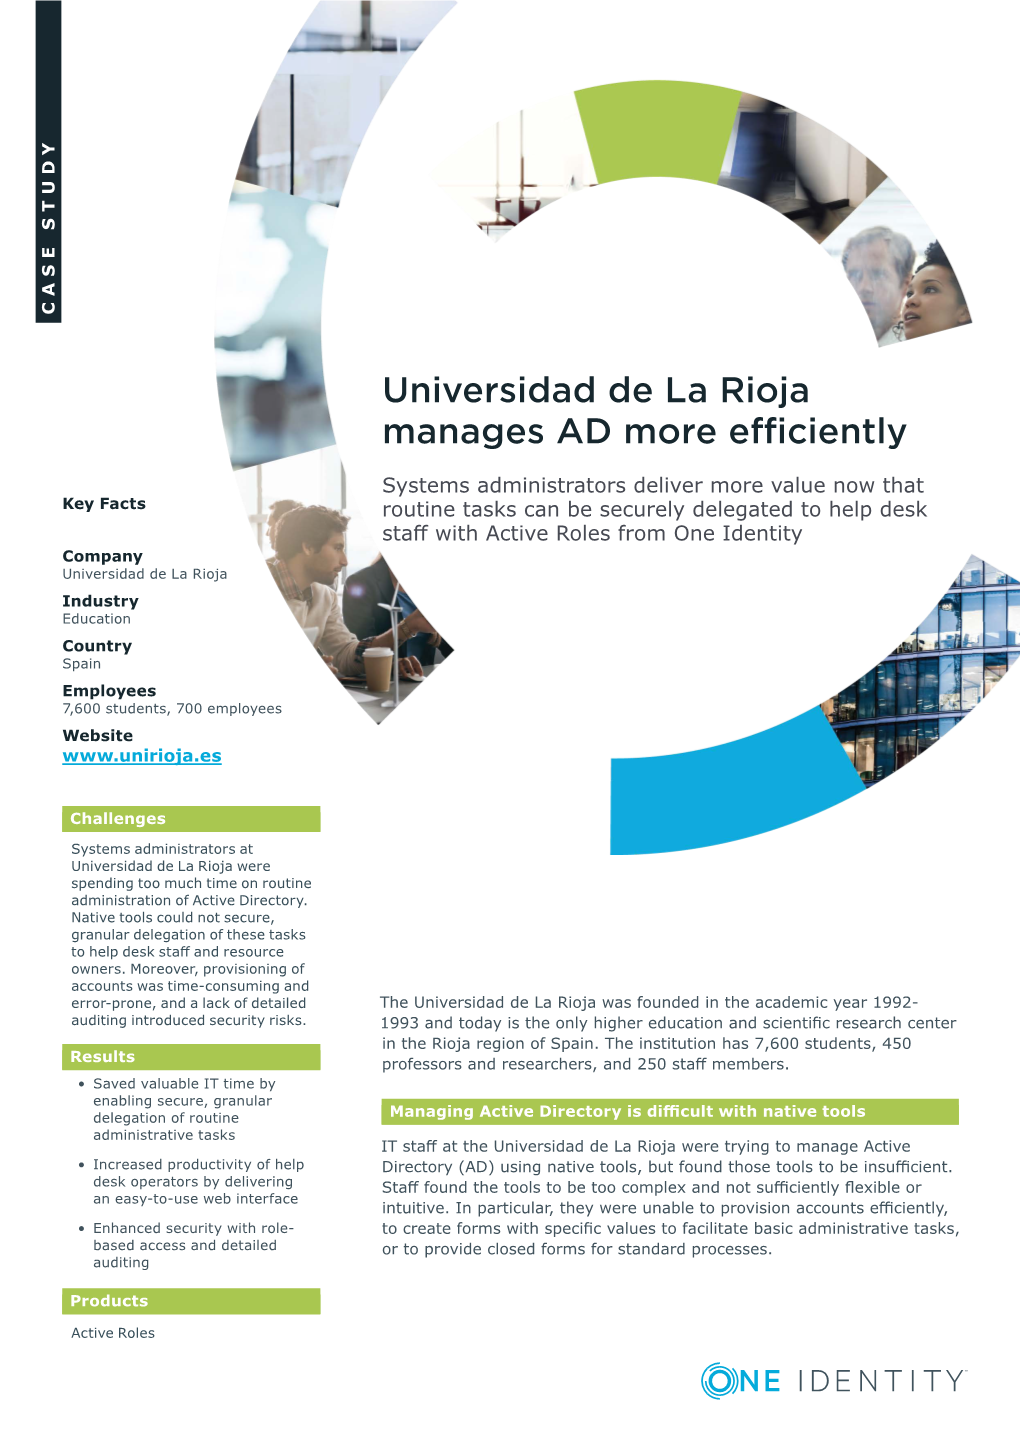 Universidad De La Rioja Manages AD More Efficiently